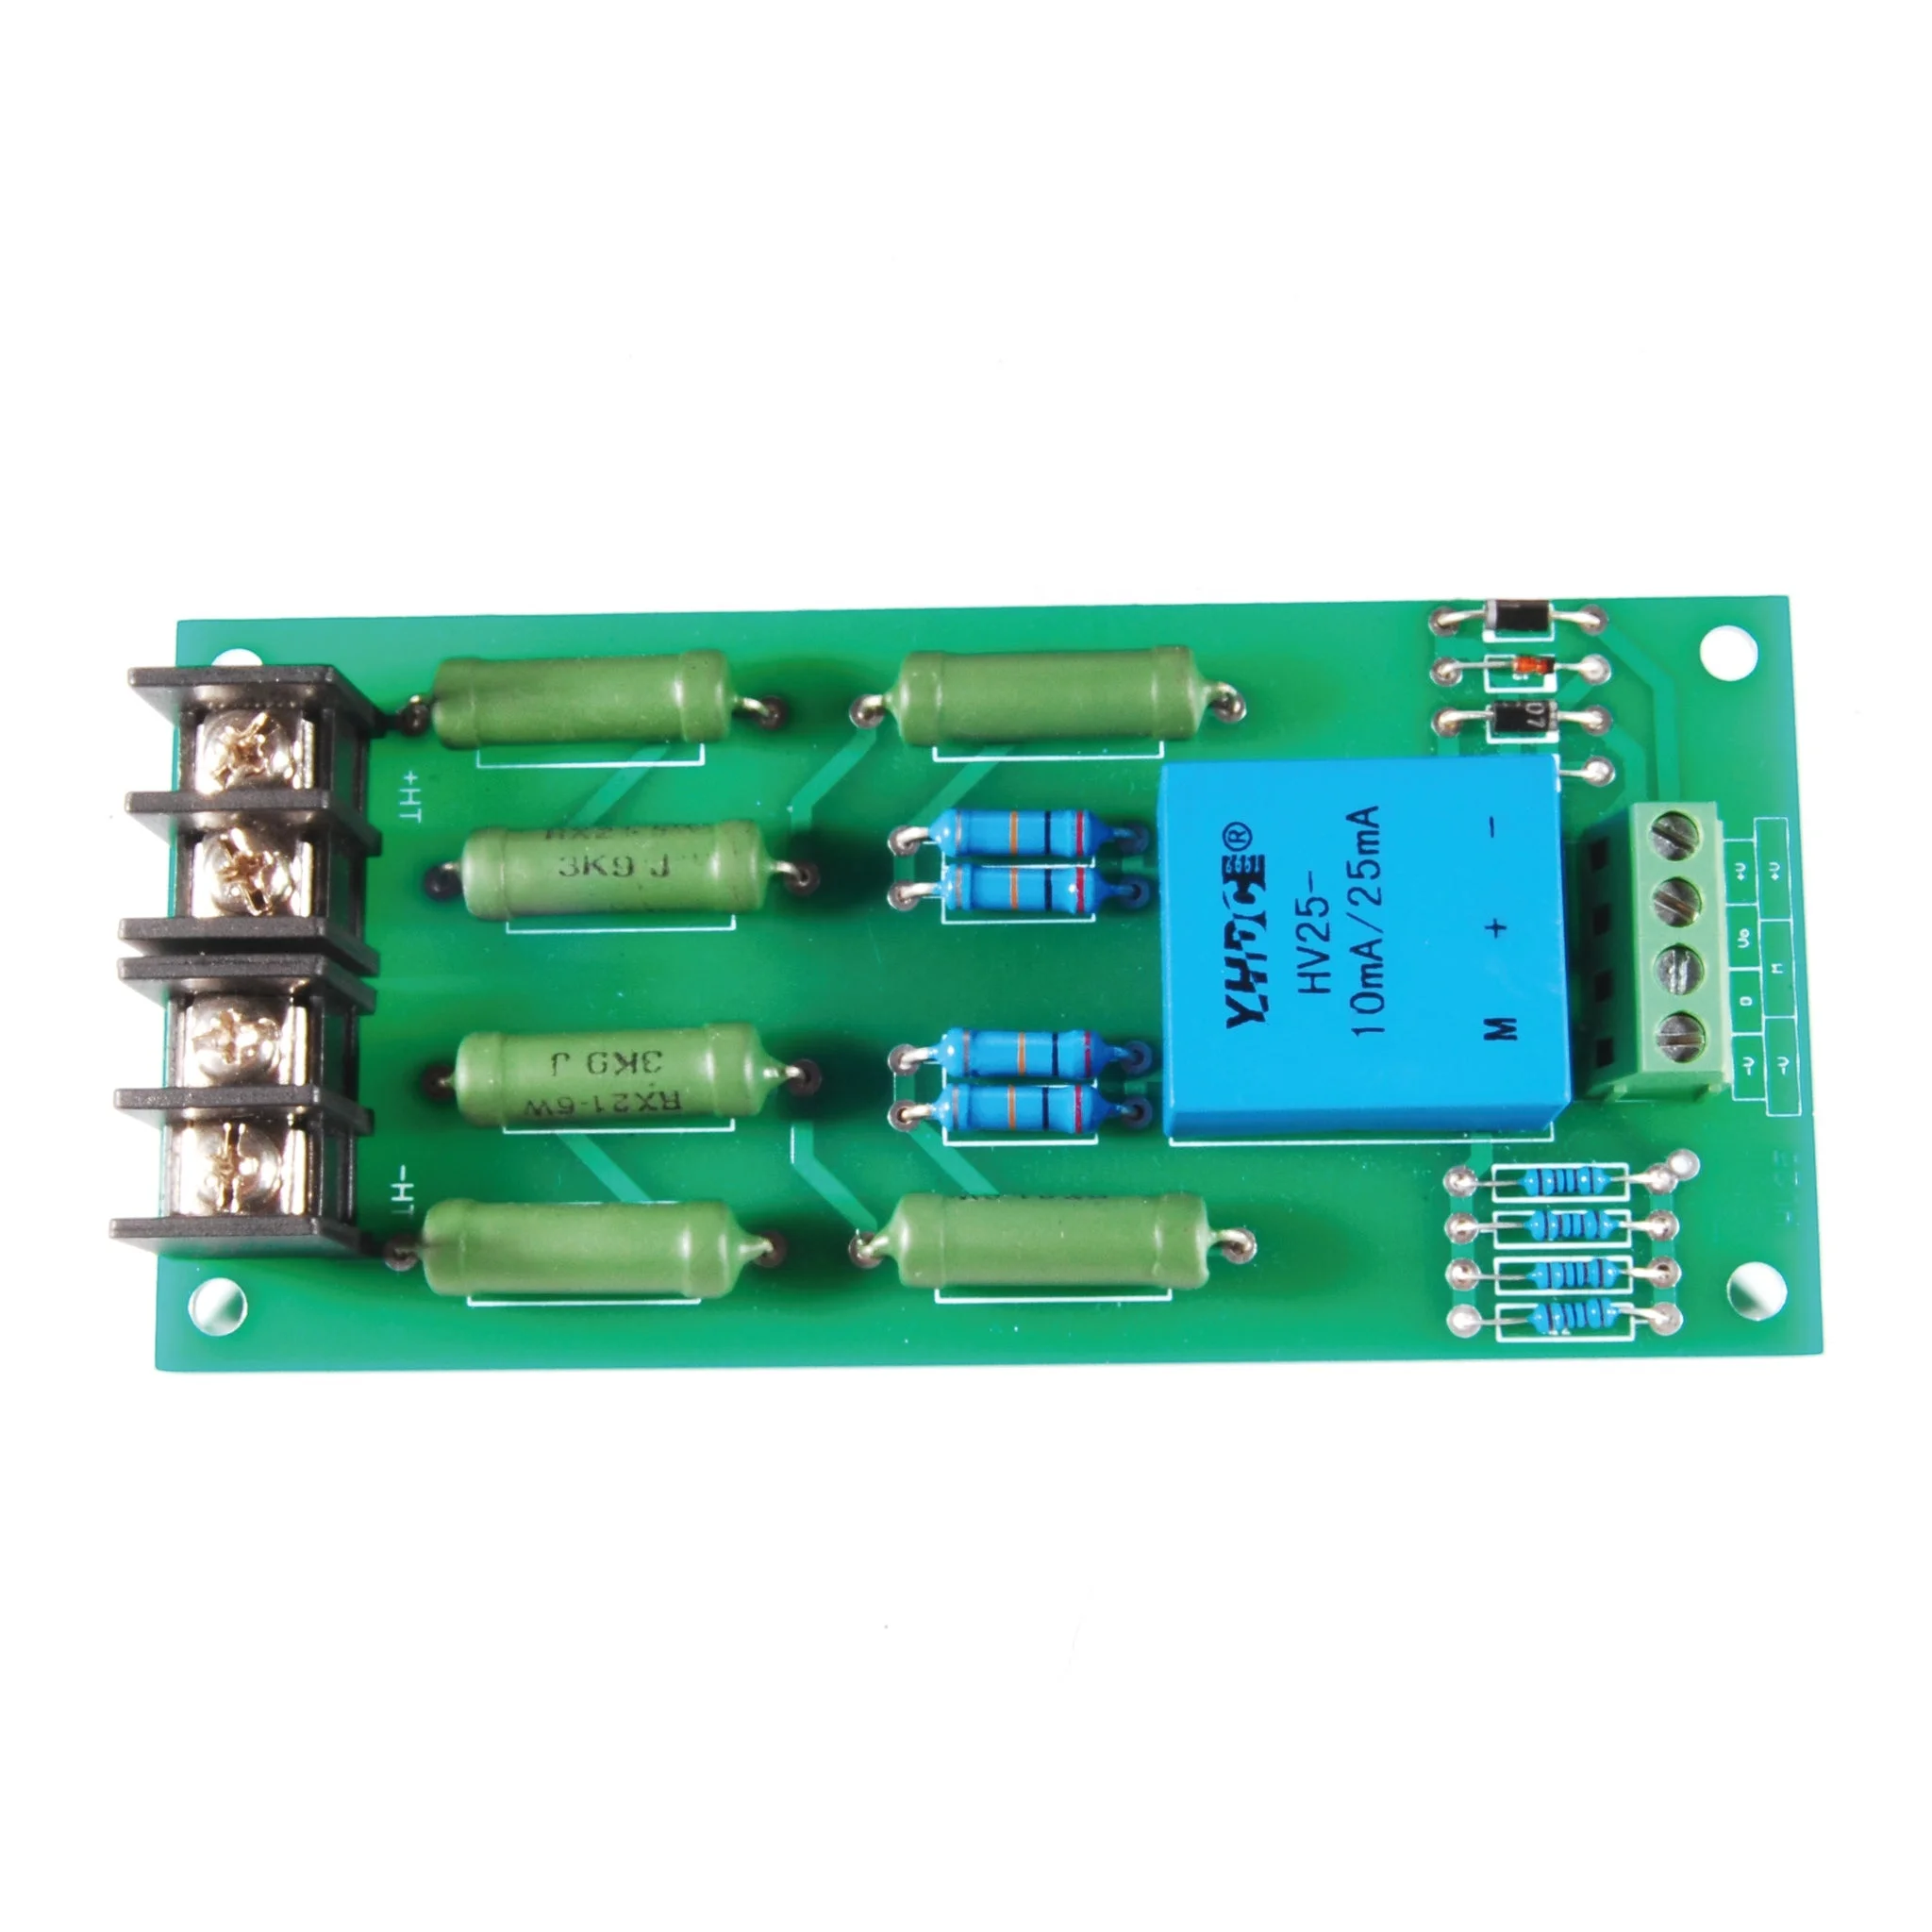 Source YHDC 200V-1000V hall effect voltage sensor,voltage transducer HV25-P  with 5V output voltage transducer on m.